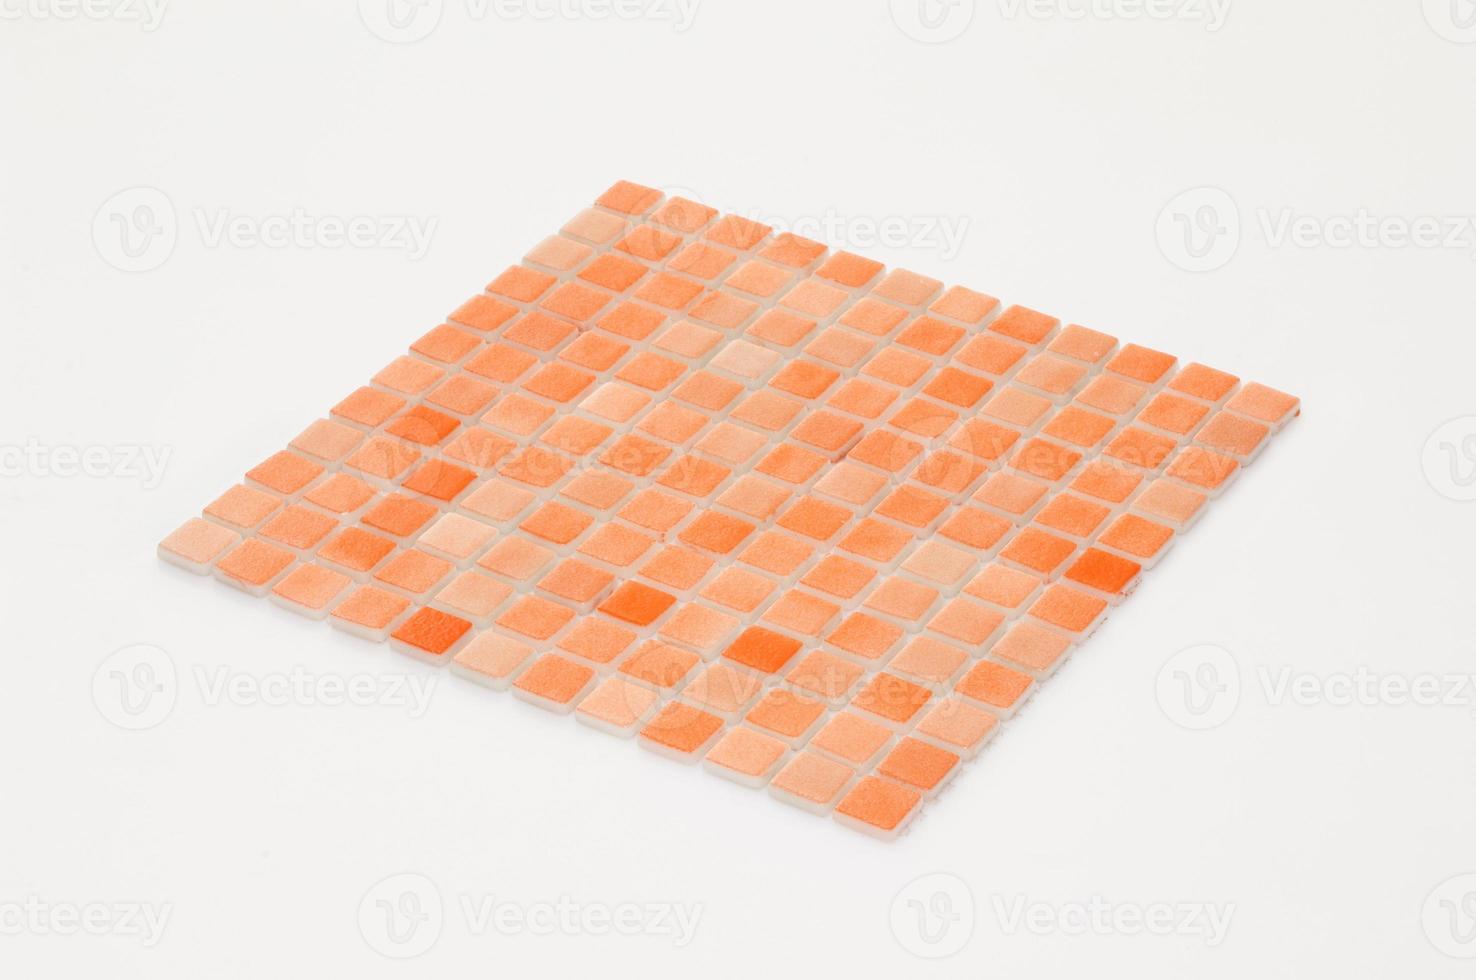 piastrella in ceramica arancio su fondo bianco, maiolica. per il catalogo foto